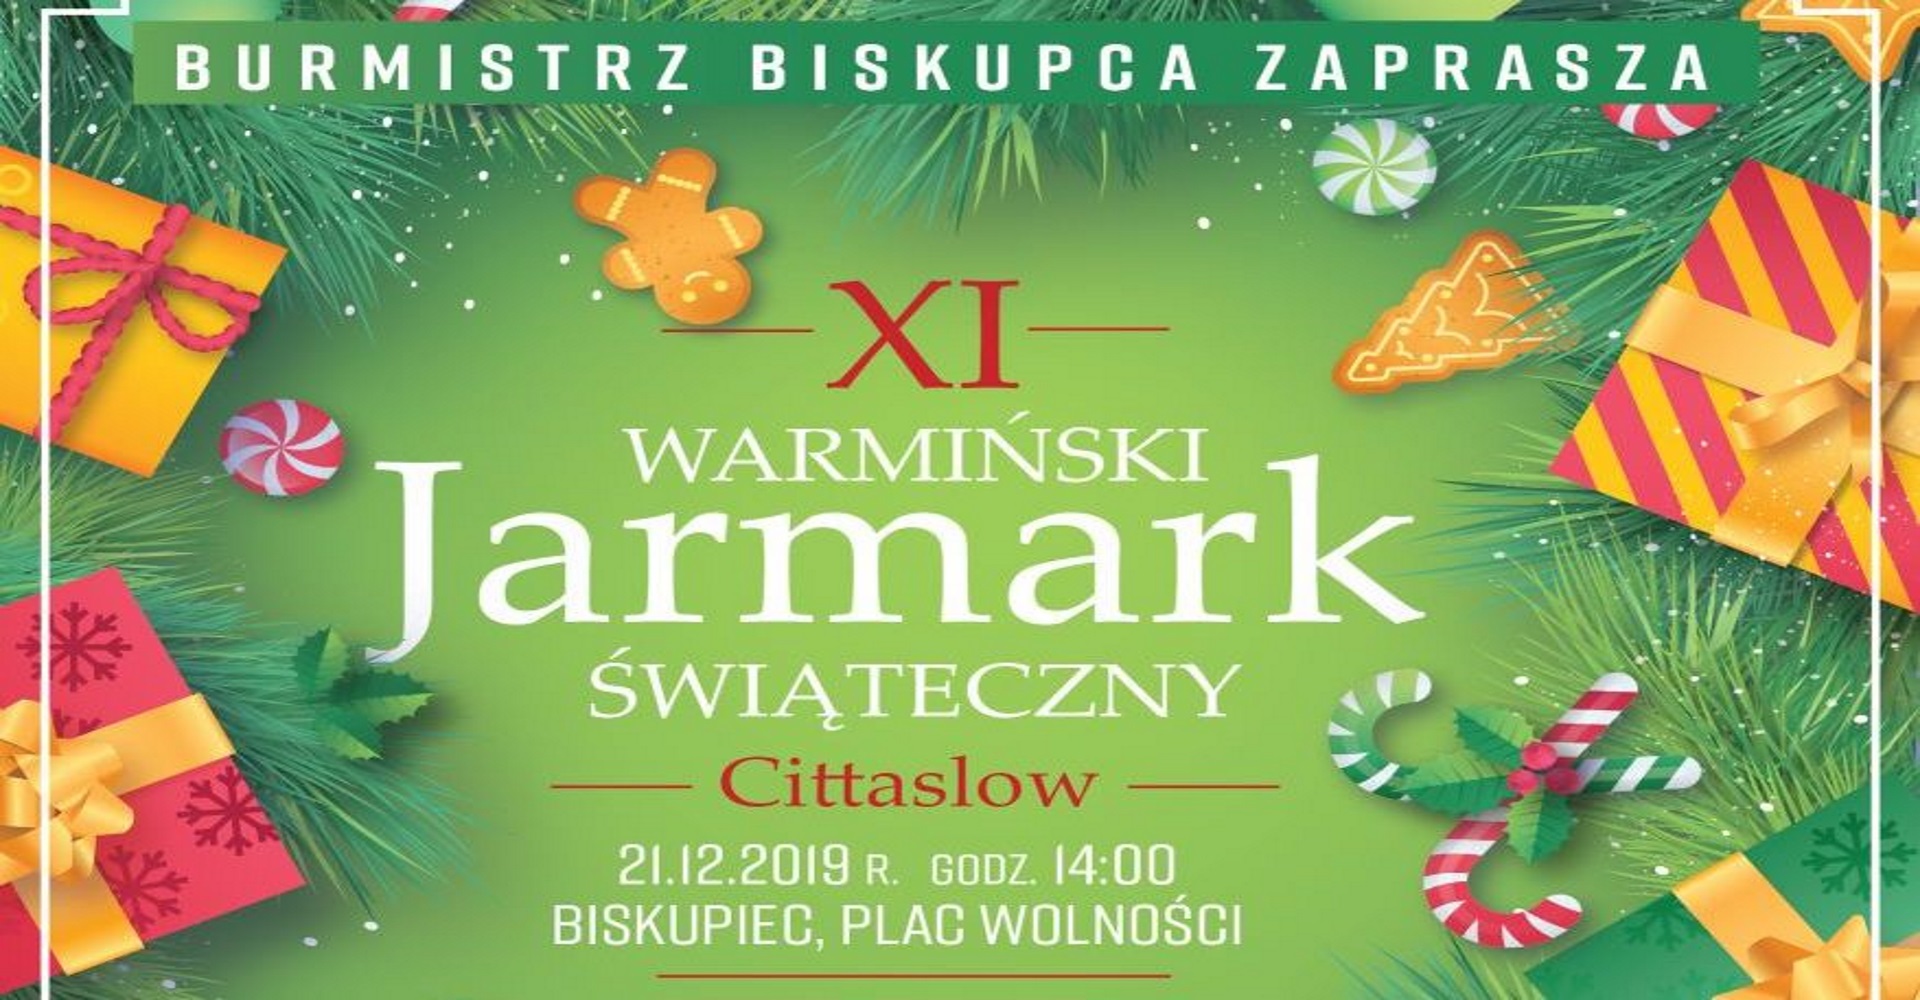 Plakat zapraszający na Warmiński Jarmark Biskupiec 2019. Zdjęcie-plakat posiada tło zielone z dodatkowymi motywami rysunkowymi prezentów. Na plakacie informacja kiedy rozpoczyna się impreza. 